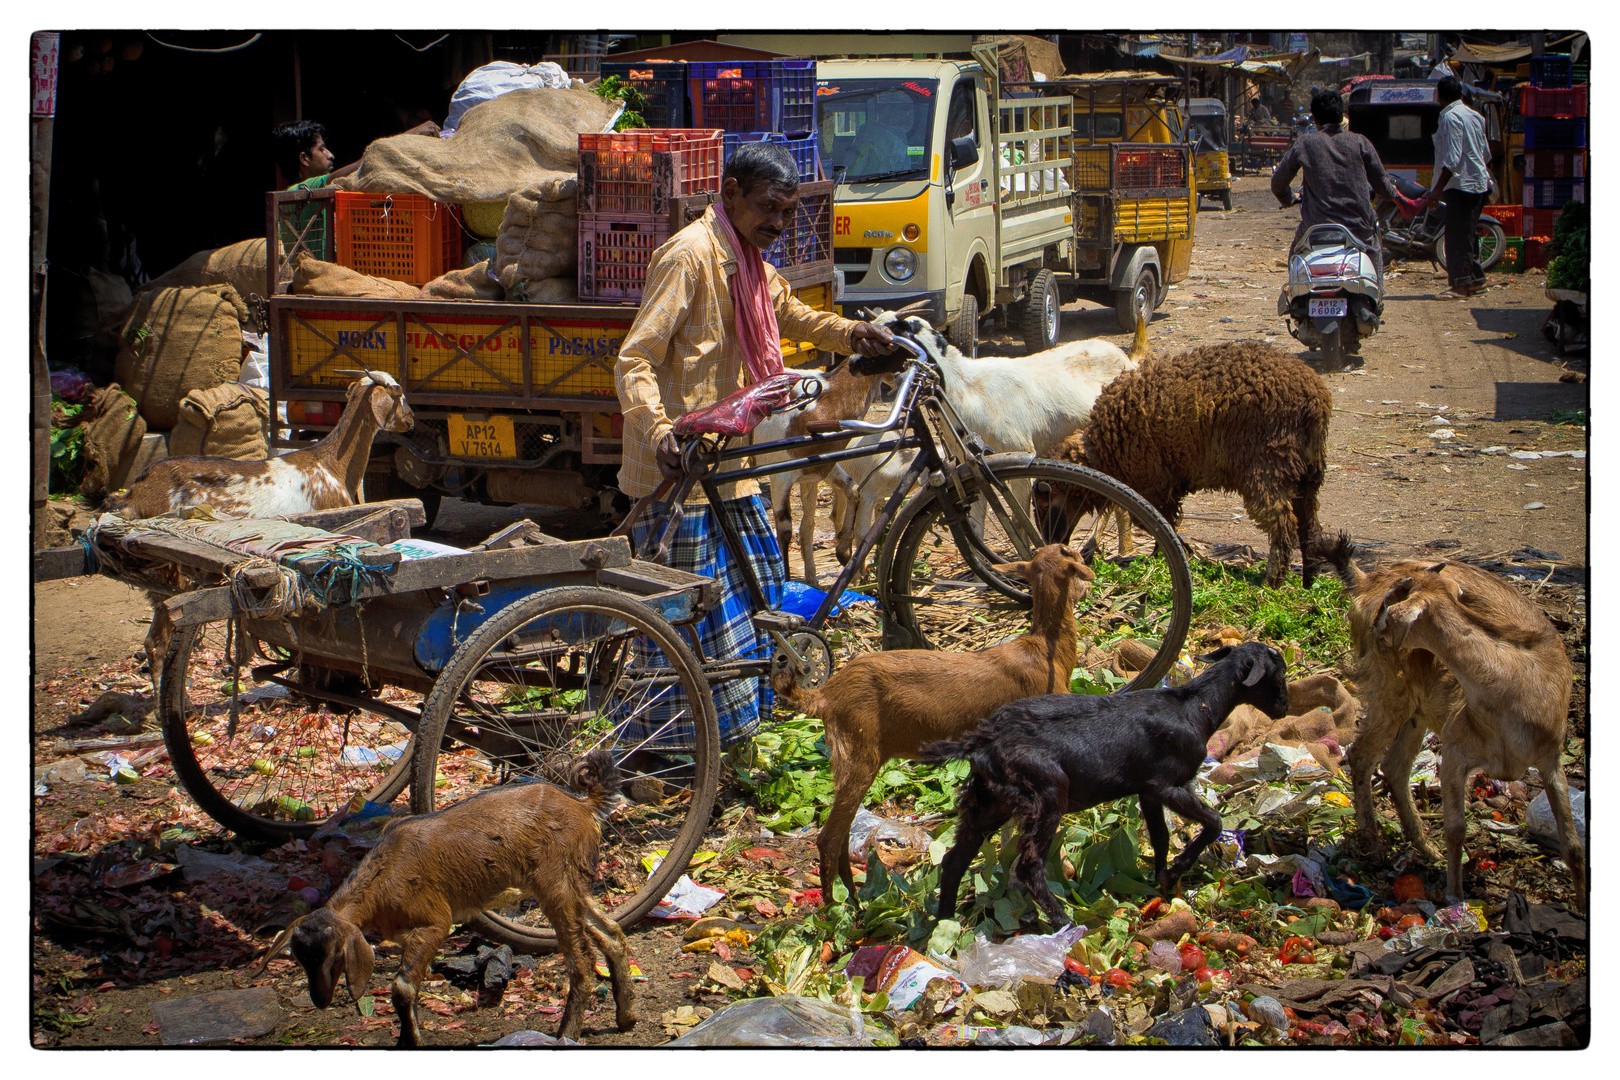 Markt in Indien, Hyderabad, März 2014